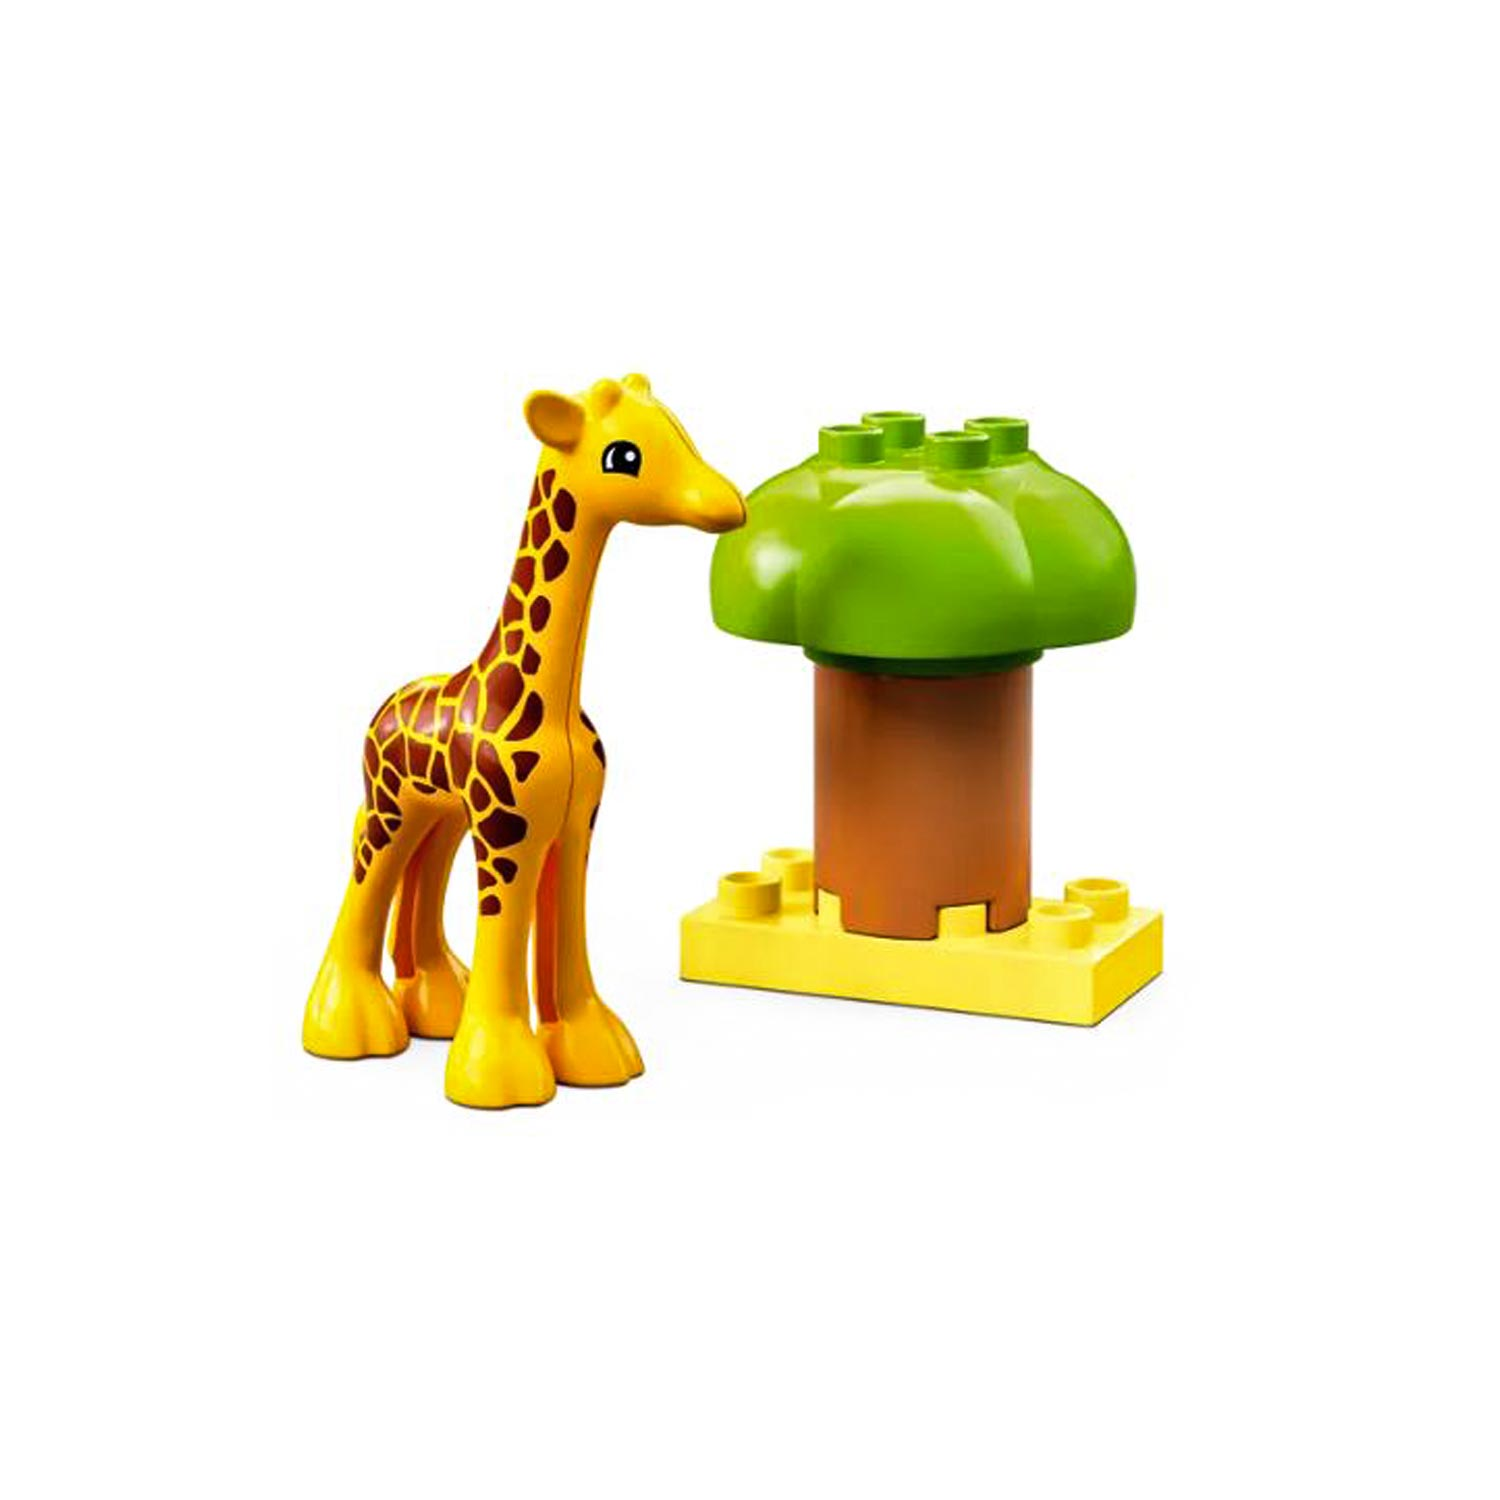 LEGO DUPLO Wild Animals of Africa giraffe